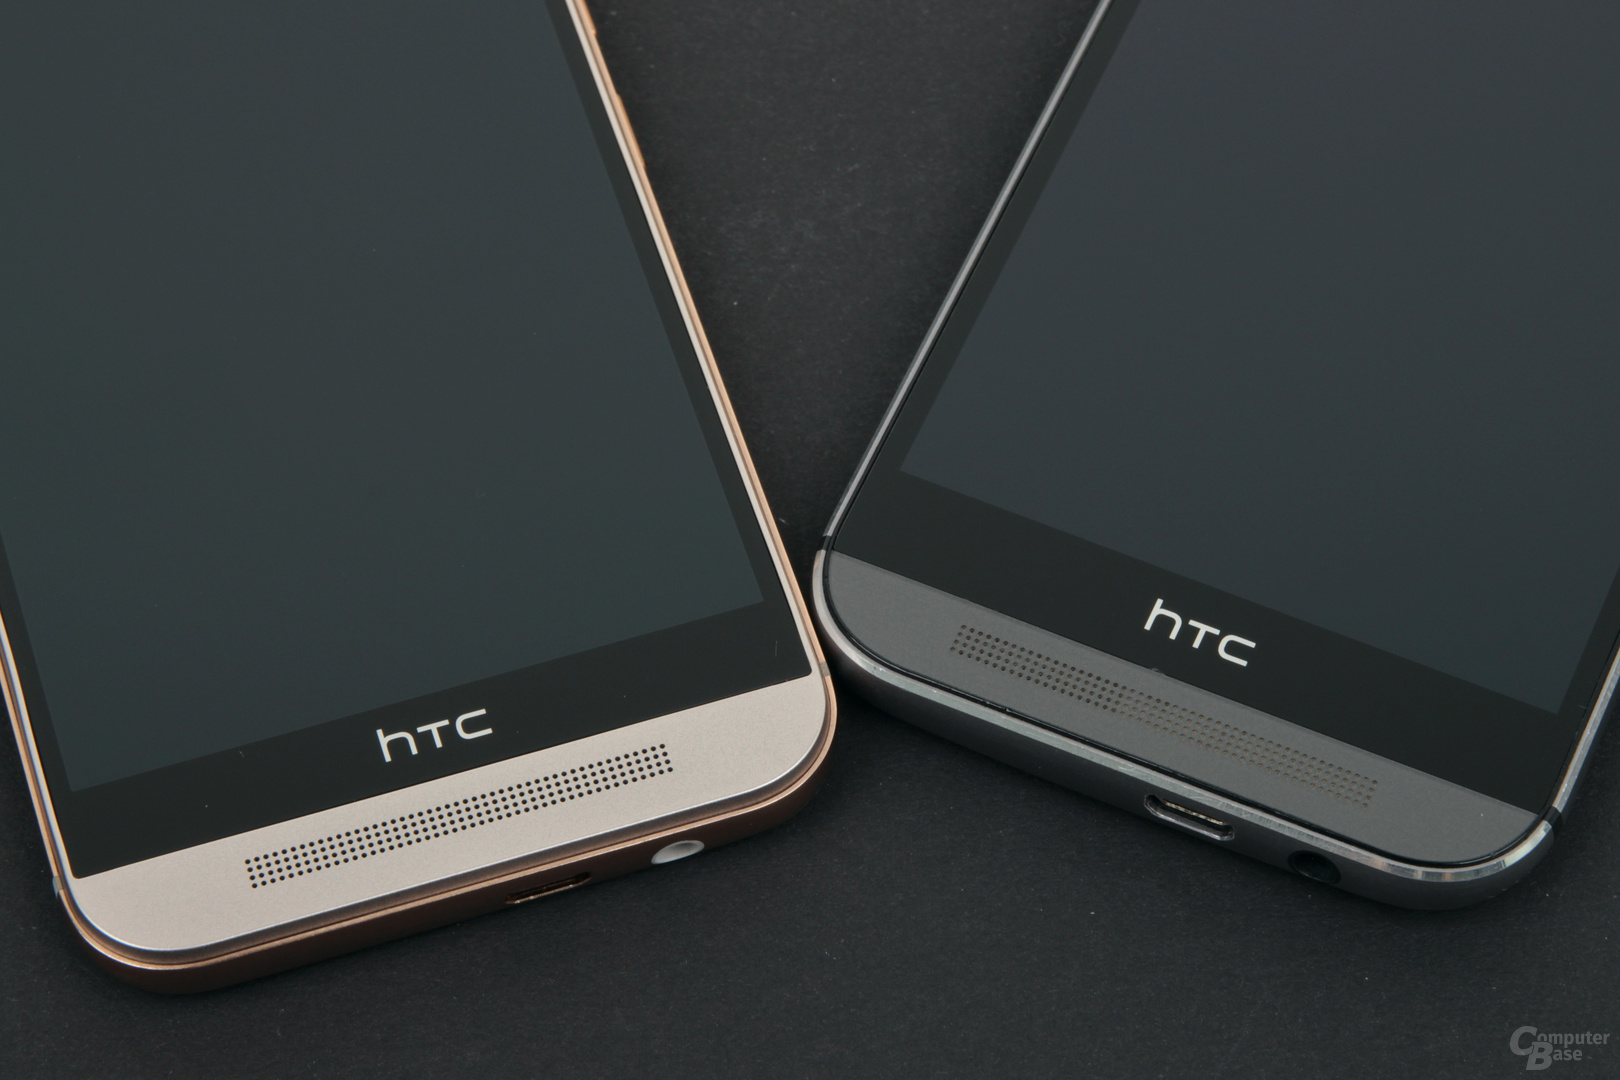 HTC One M9 (links) und One M8